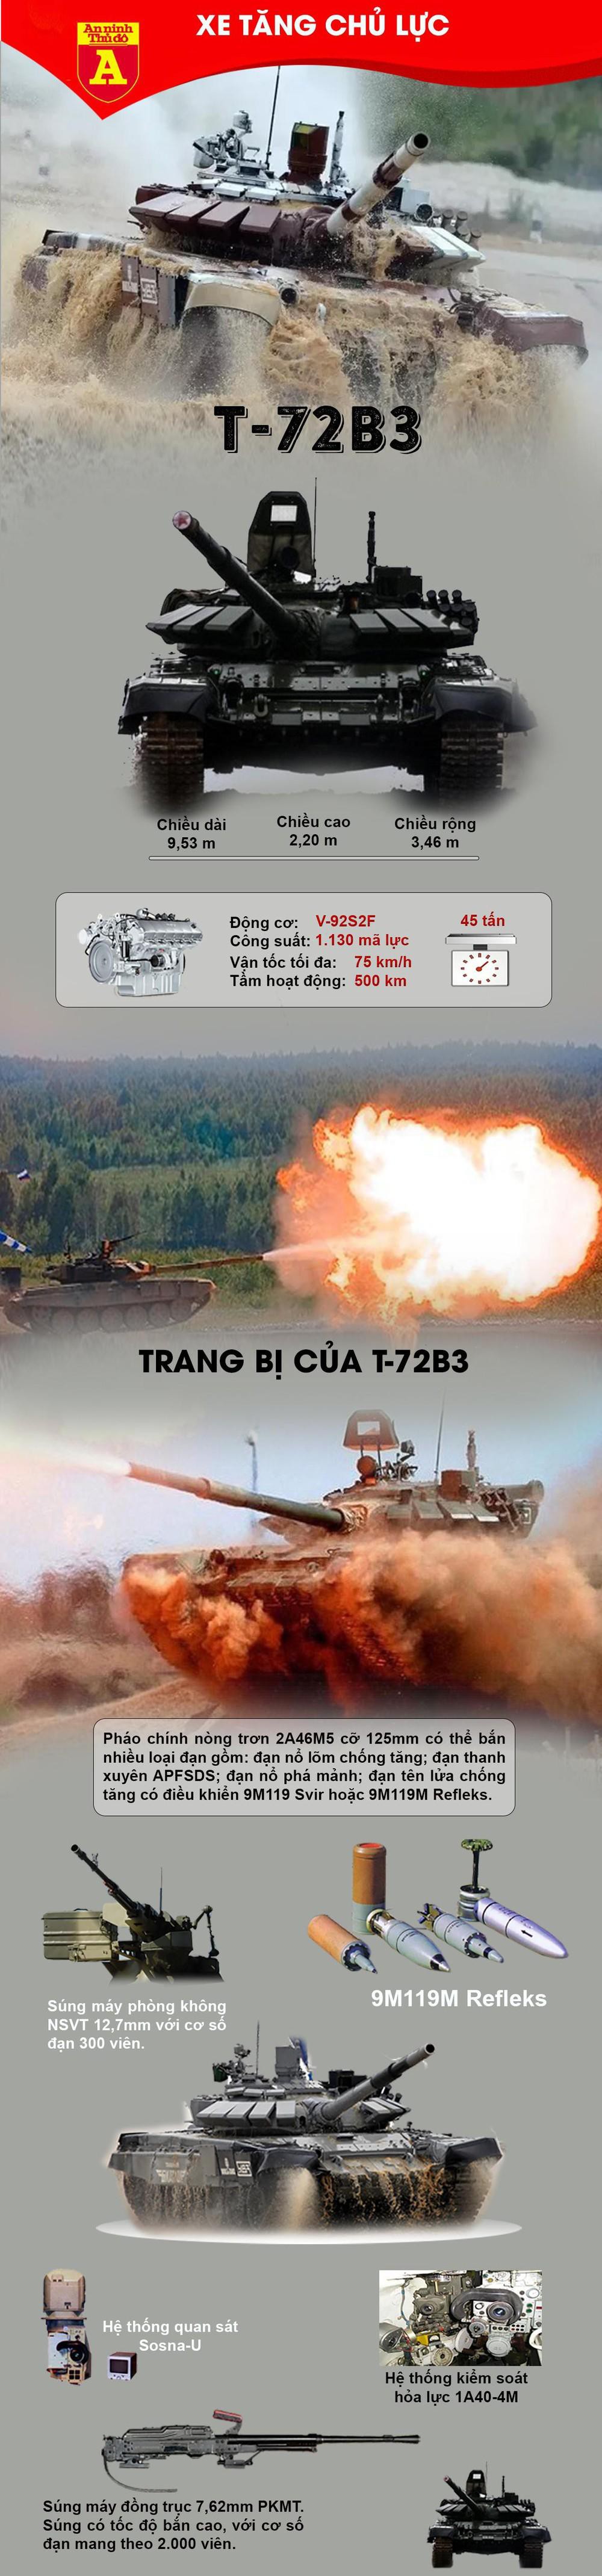 Xe tăng chủ lực T-72B3 bị tên lửa Ukraine thổi bay tháp pháo - Ảnh 1